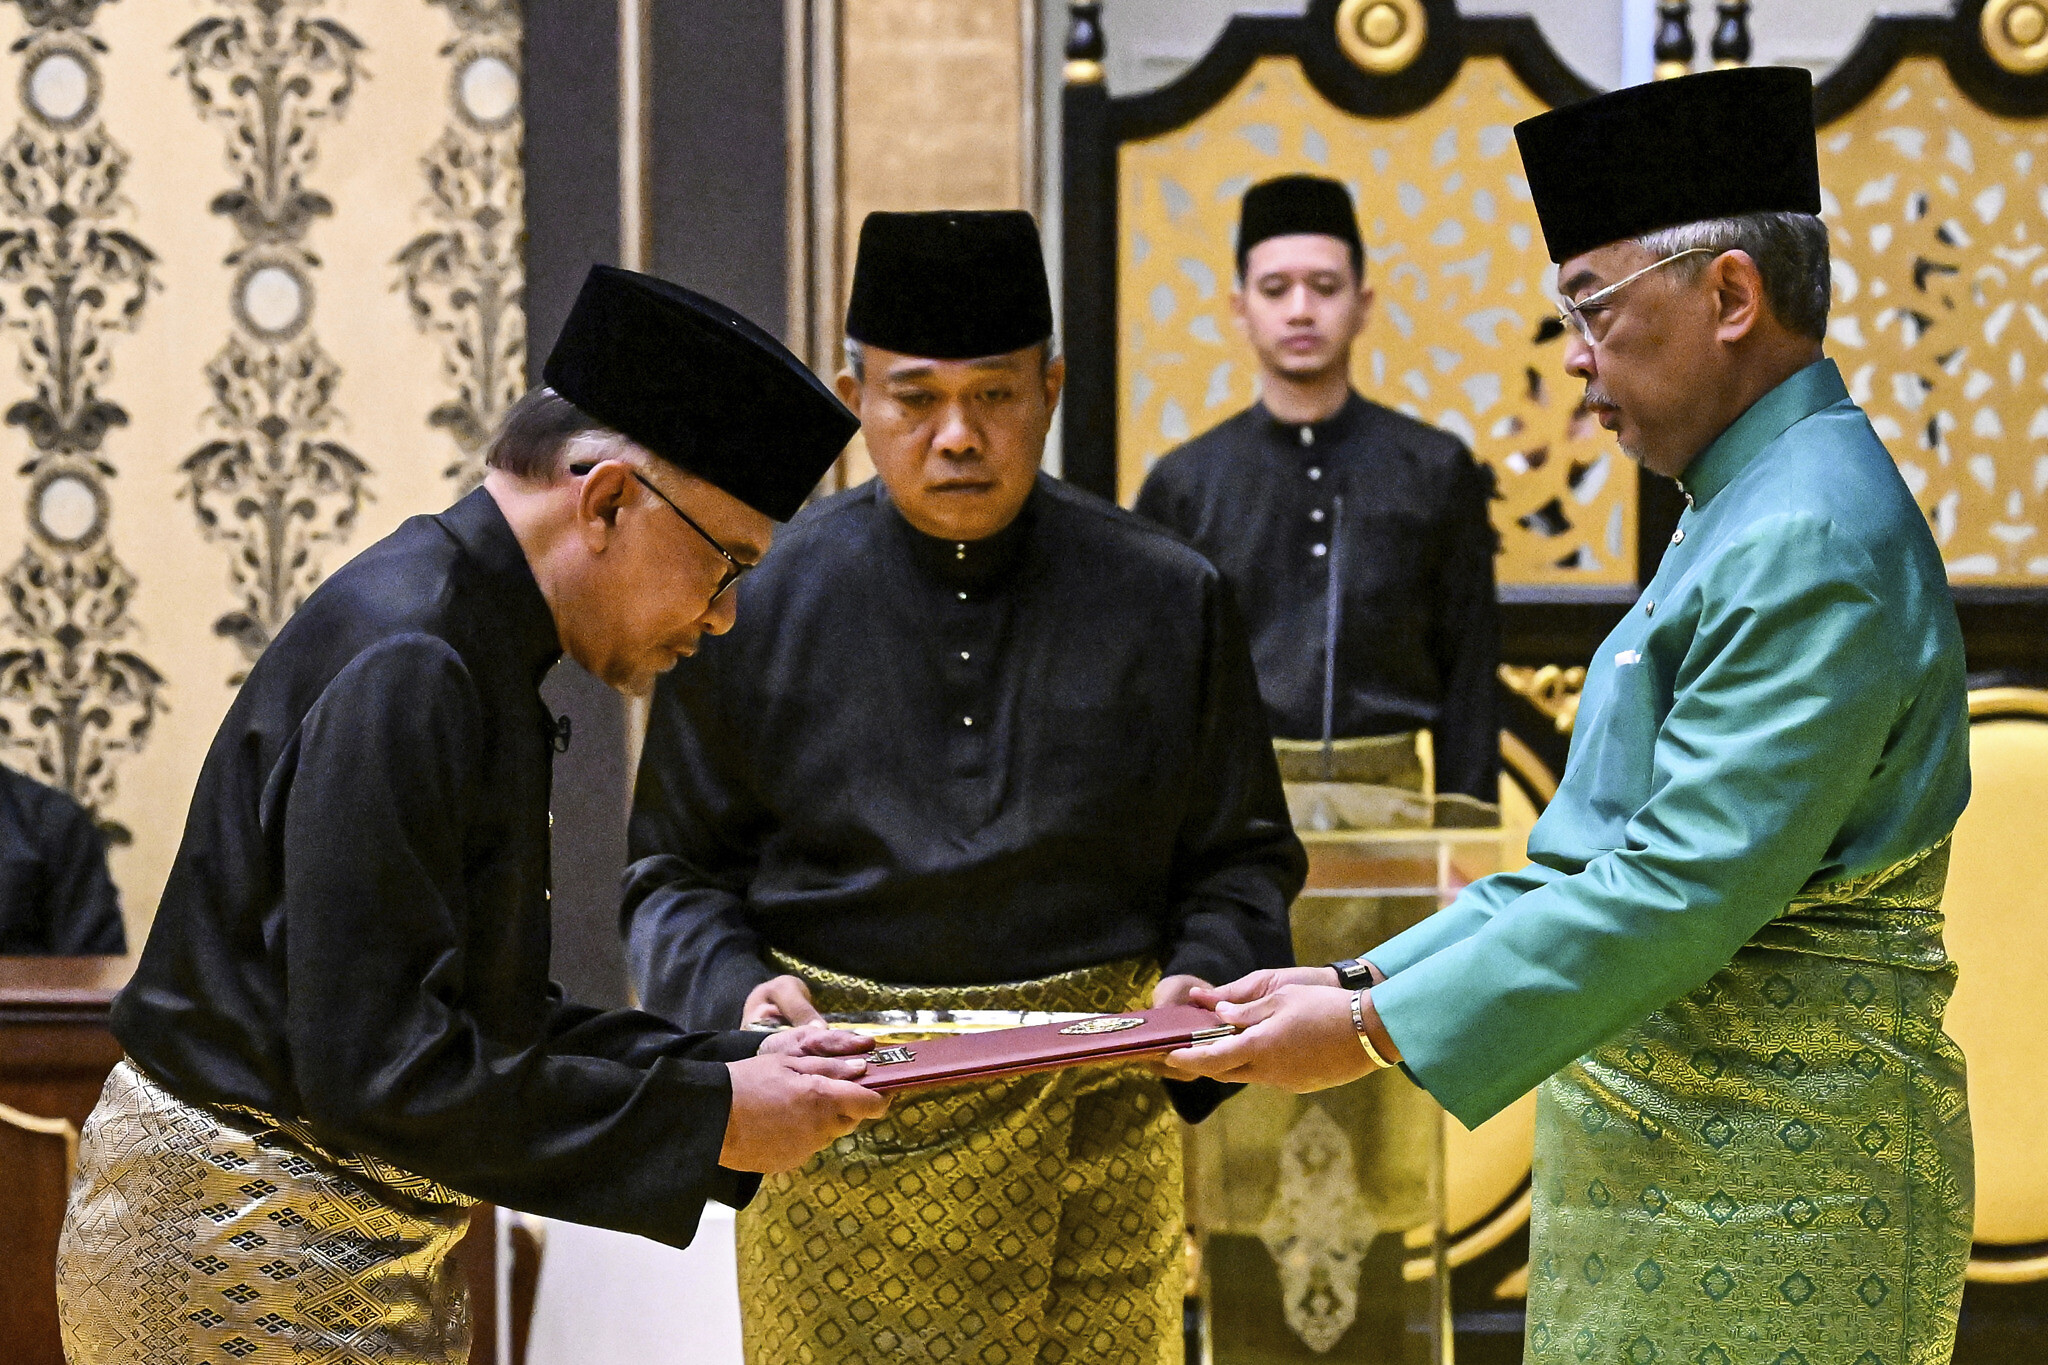 Anwar Ibrahim sworn in as the country's 10th Prime Minister by His Majesty KDYMM Seri Paduka Baginda Yang di-Pertuan Agong. Image credit: Associated Press